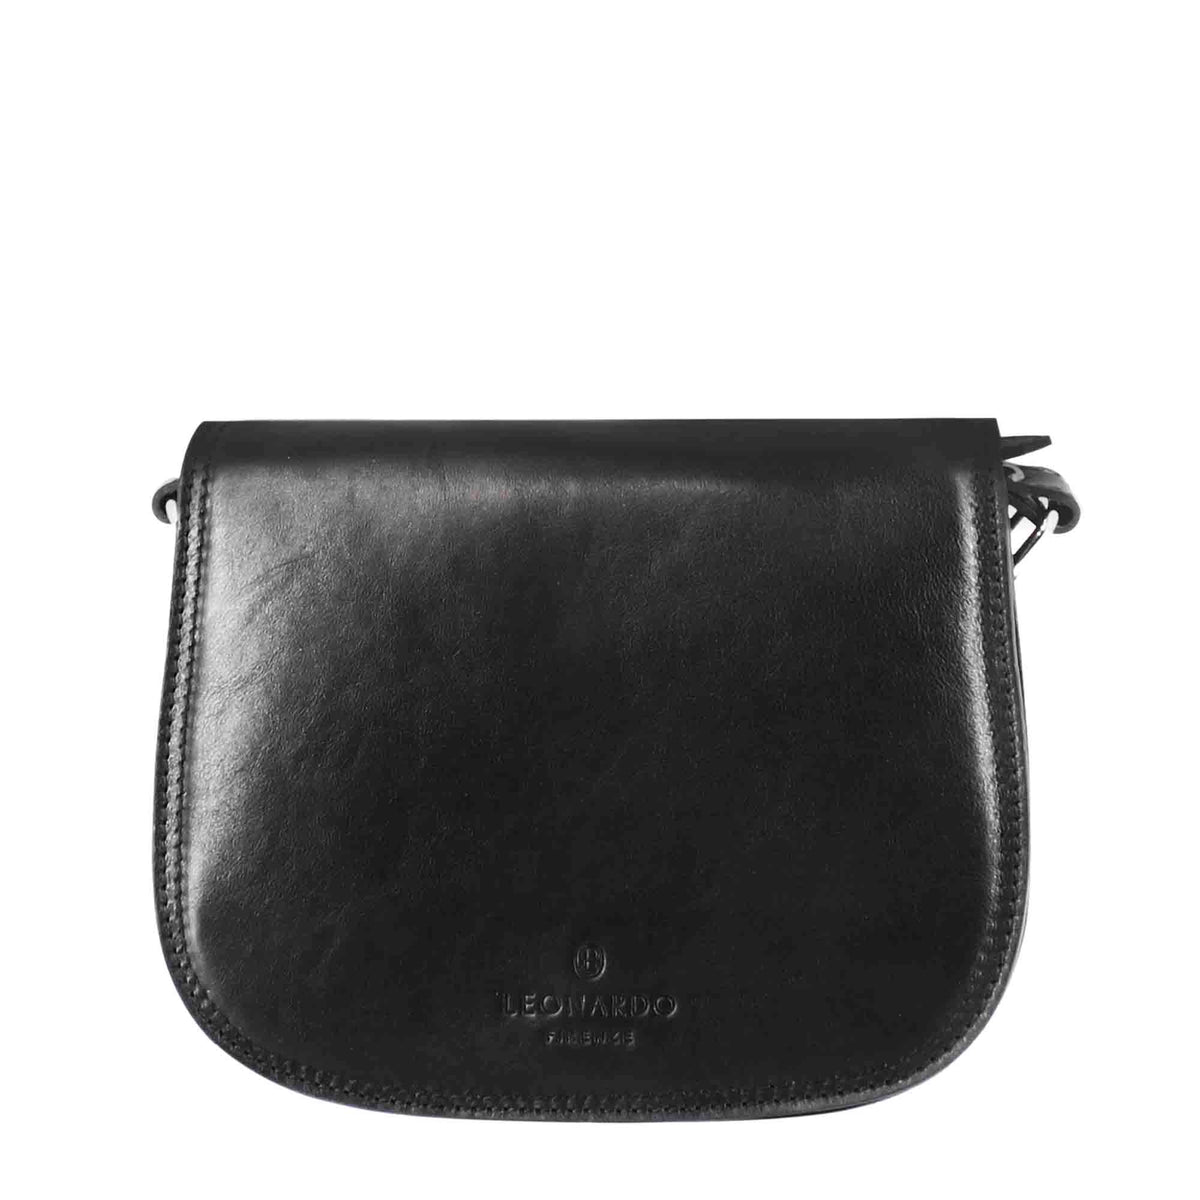 Essential Bag für Frauen aus schwarzem Glattleder